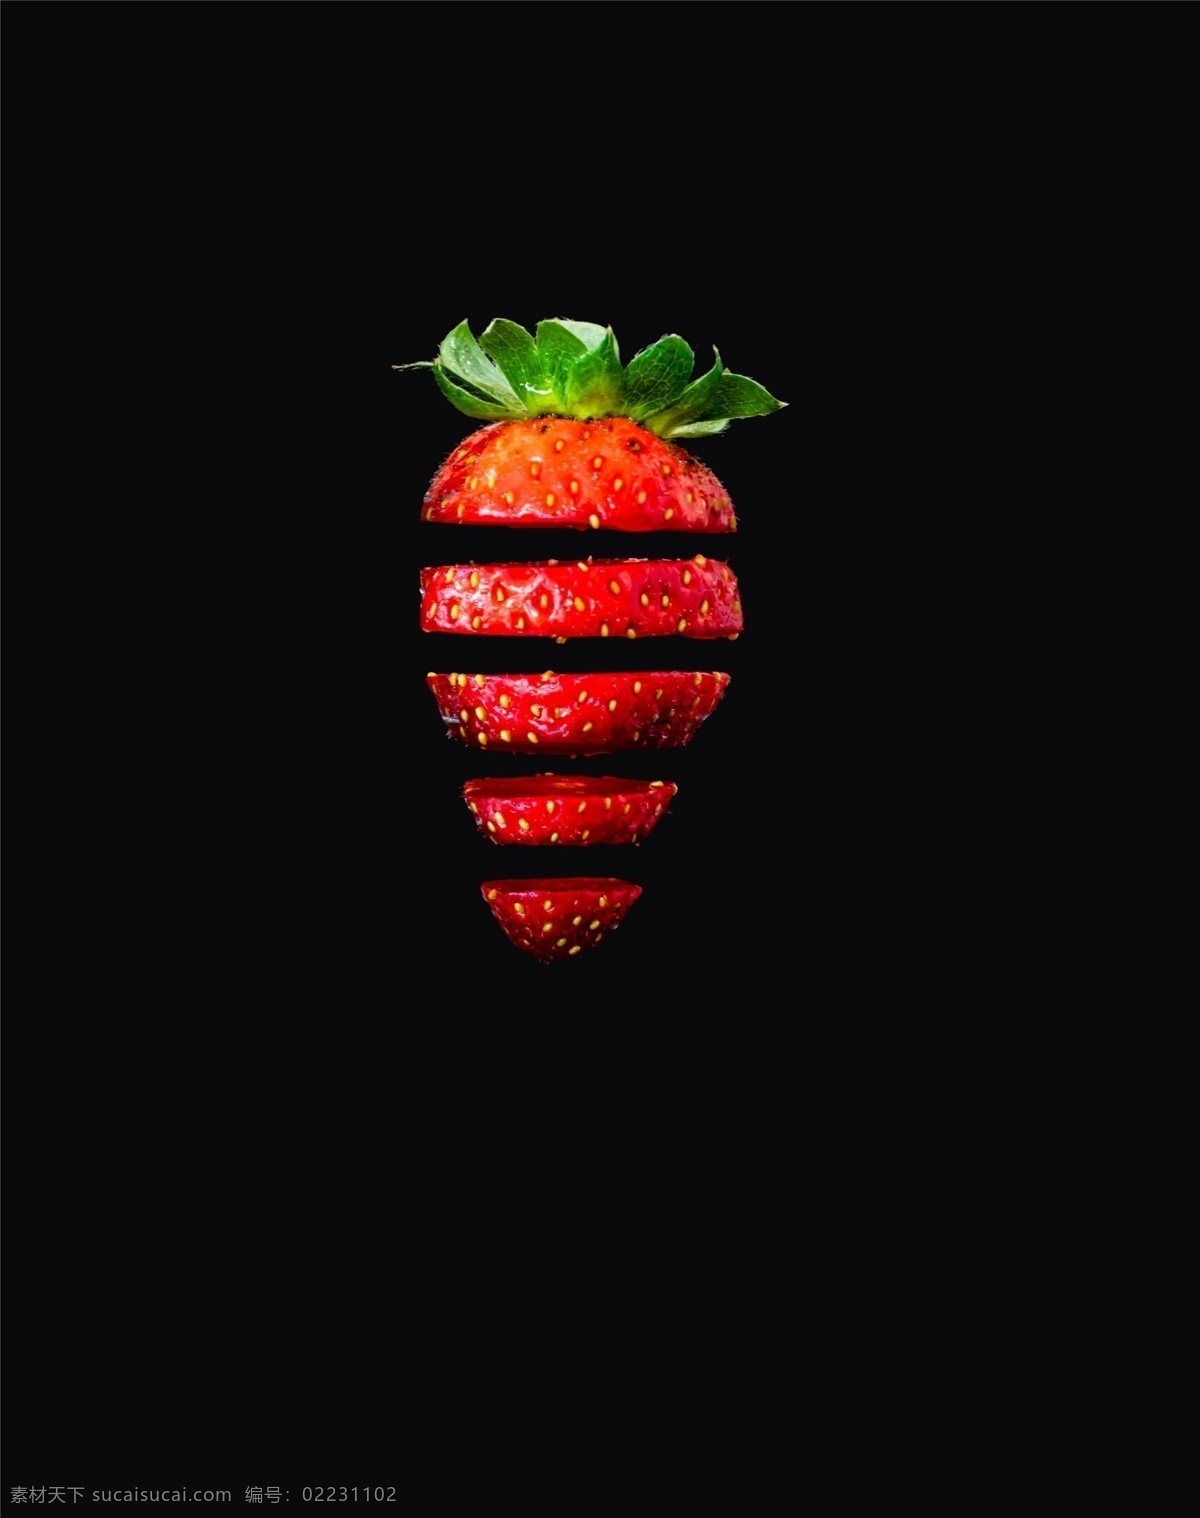 草莓背景 切开的草莓 水果 水果背景 背景 创意 高清 简单 简约 大气 清新 壁纸 电脑壁纸 桌面 电脑桌面 海报 设计素材 拍摄 摆拍 1920px 生物世界